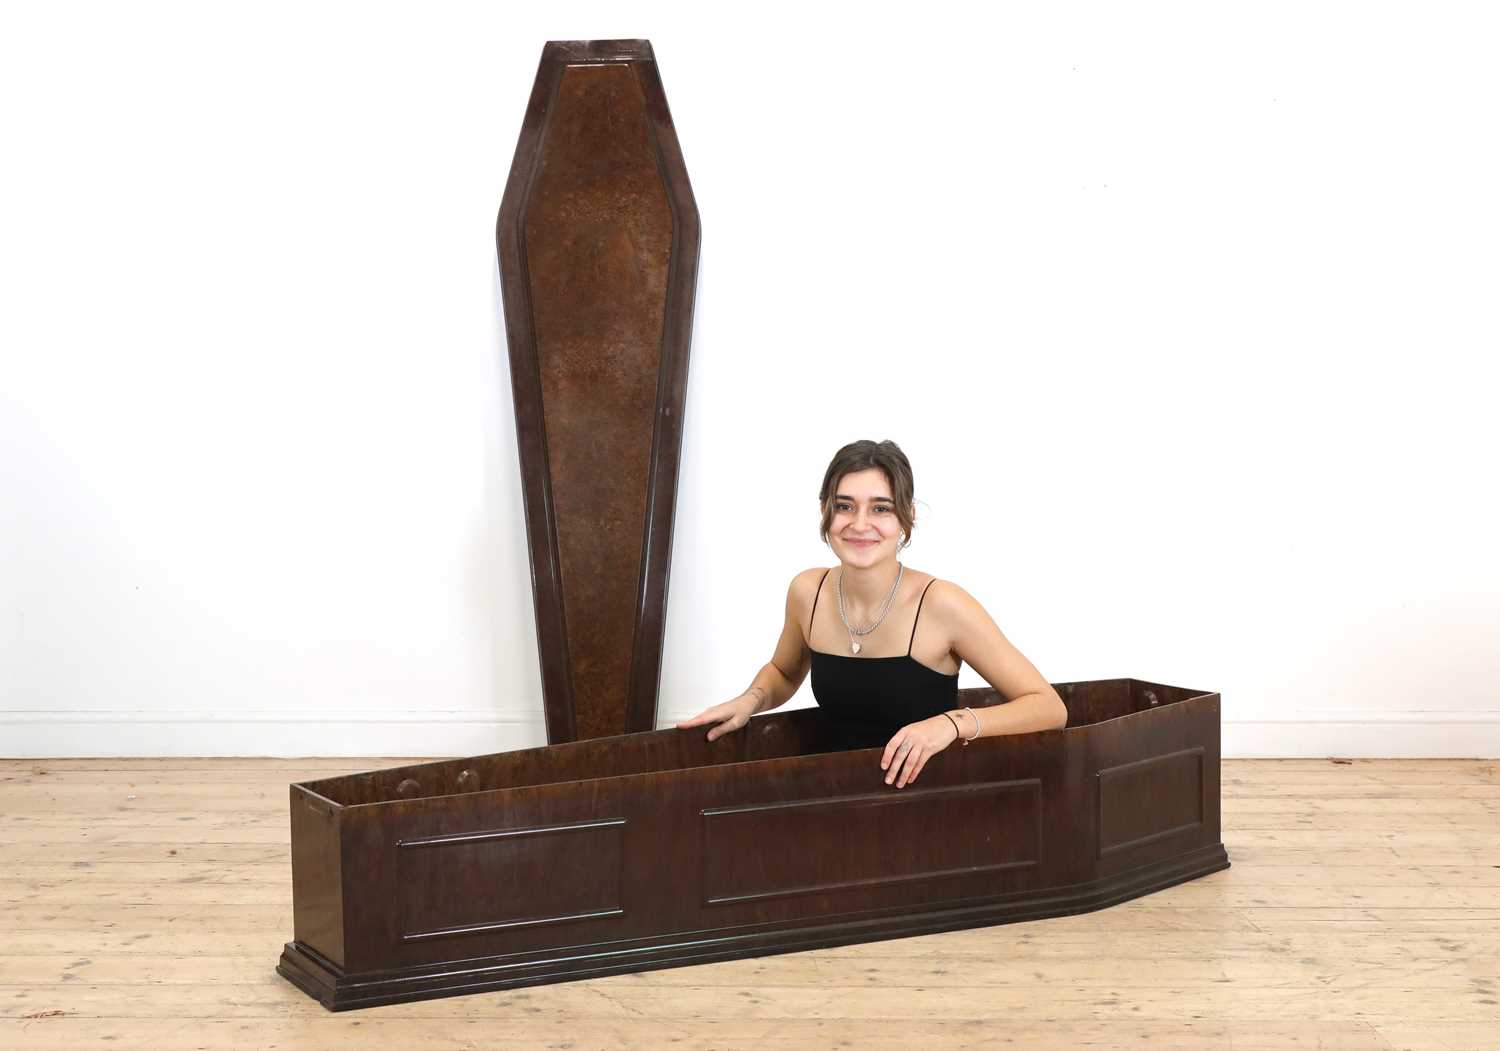 A rare full-sized Bakelite coffin,